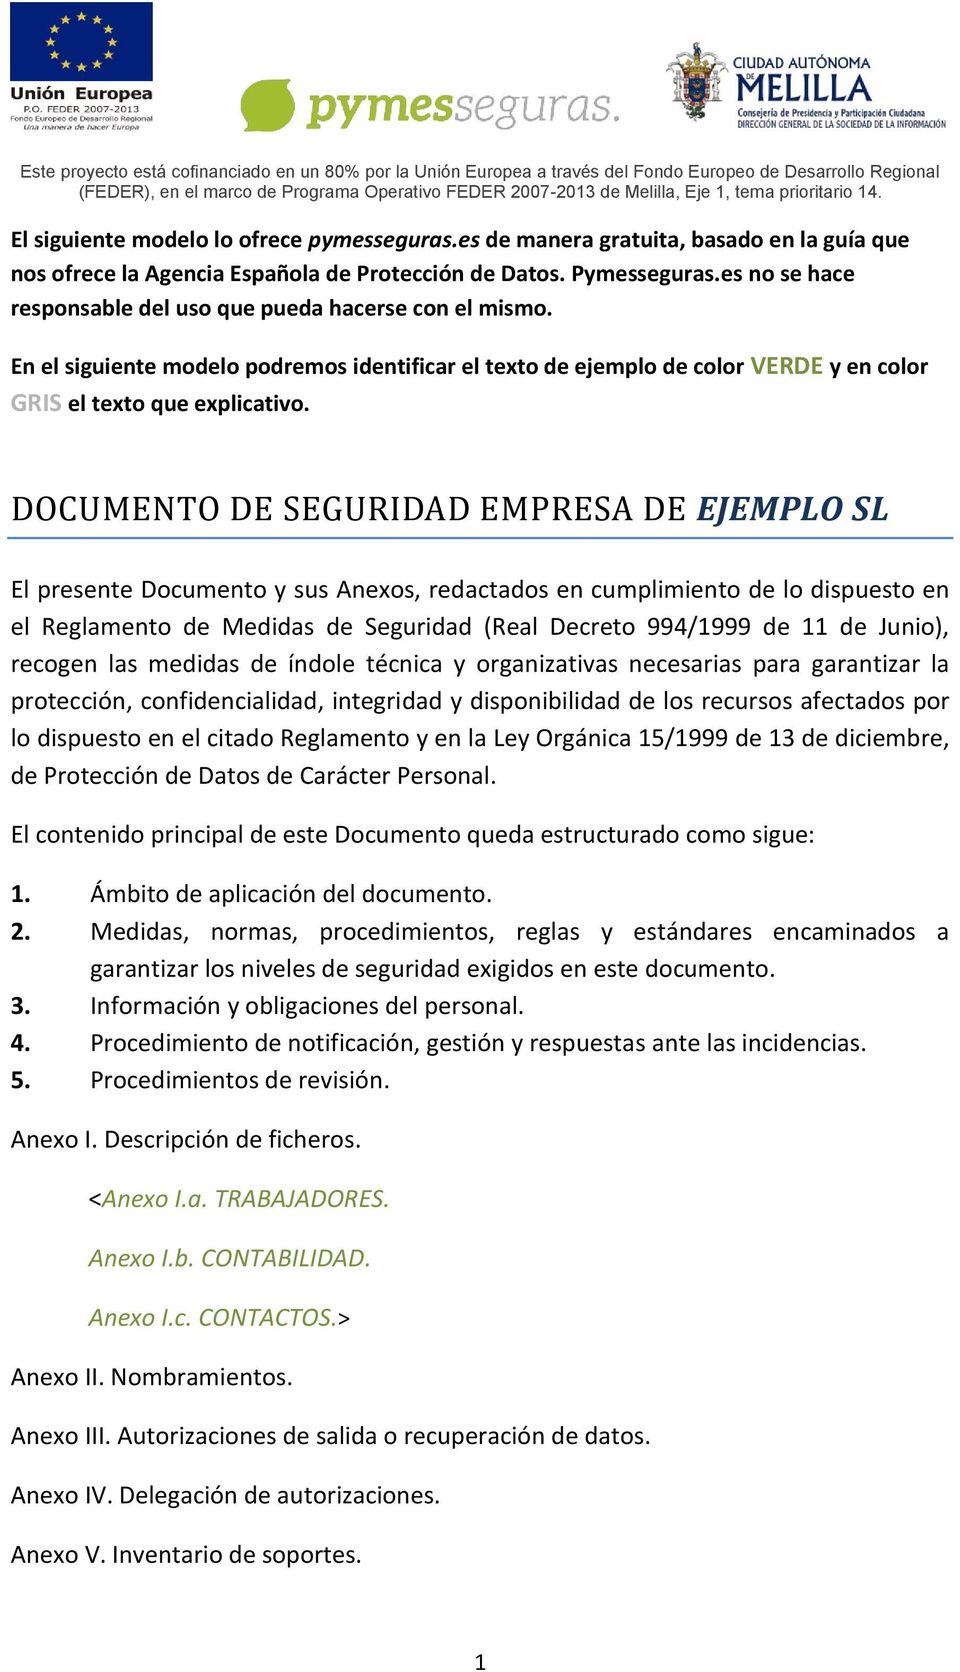 DOCUMENTO DE SEGURIDAD EMPRESA DE EJEMPLO SL El presente Documento y sus Anexos, redactados en cumplimiento de lo dispuesto en el Reglamento de Medidas de Seguridad (Real Decreto 994/1999 de 11 de